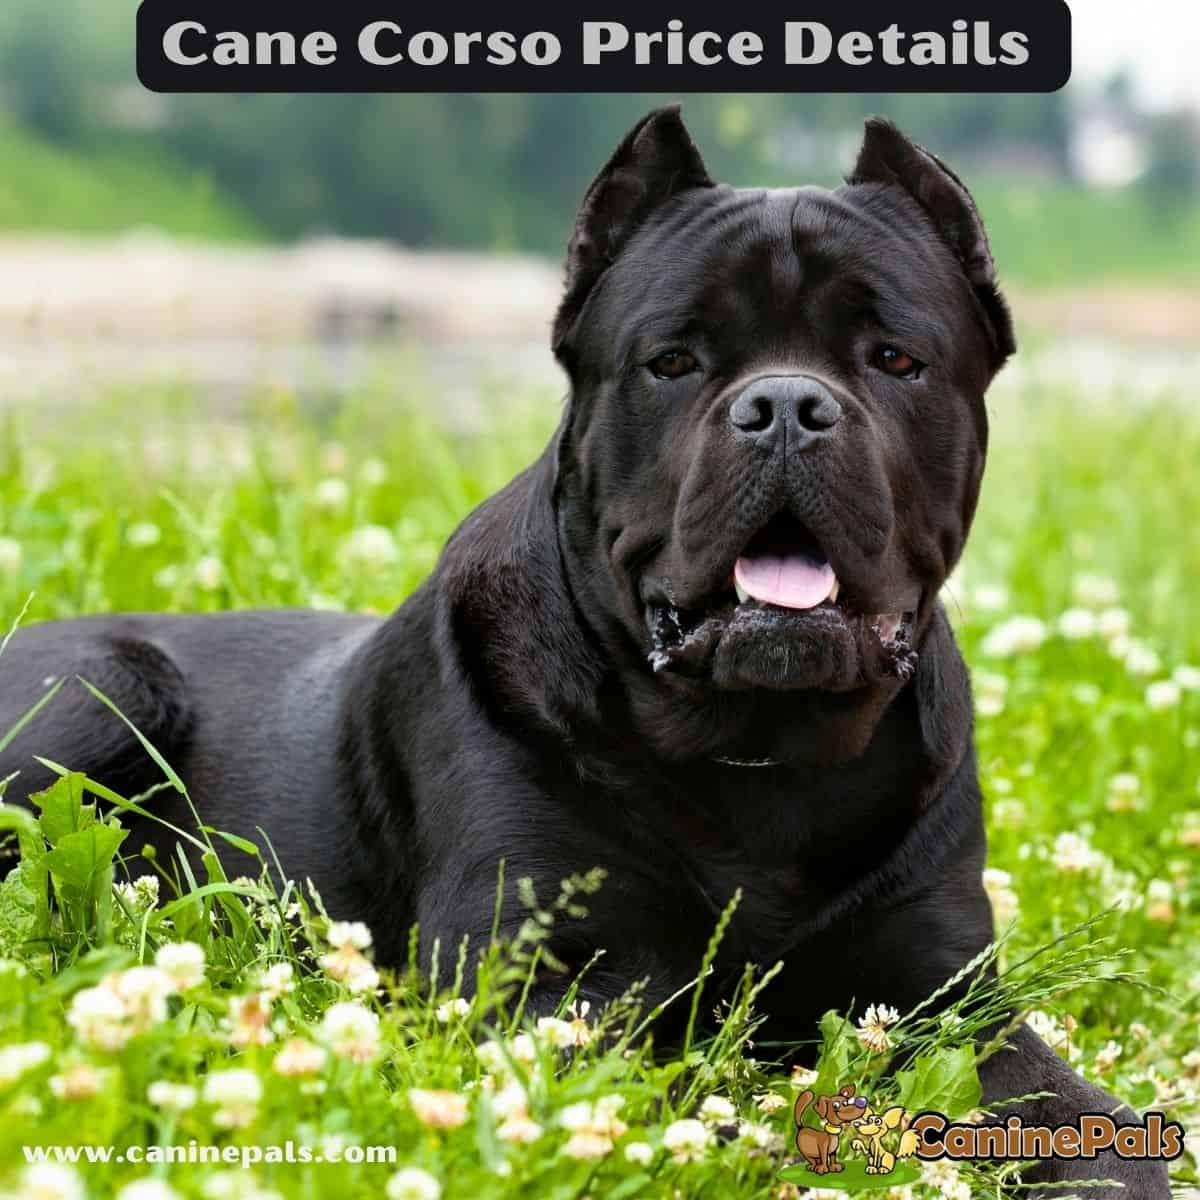 Cane Corso Price Details